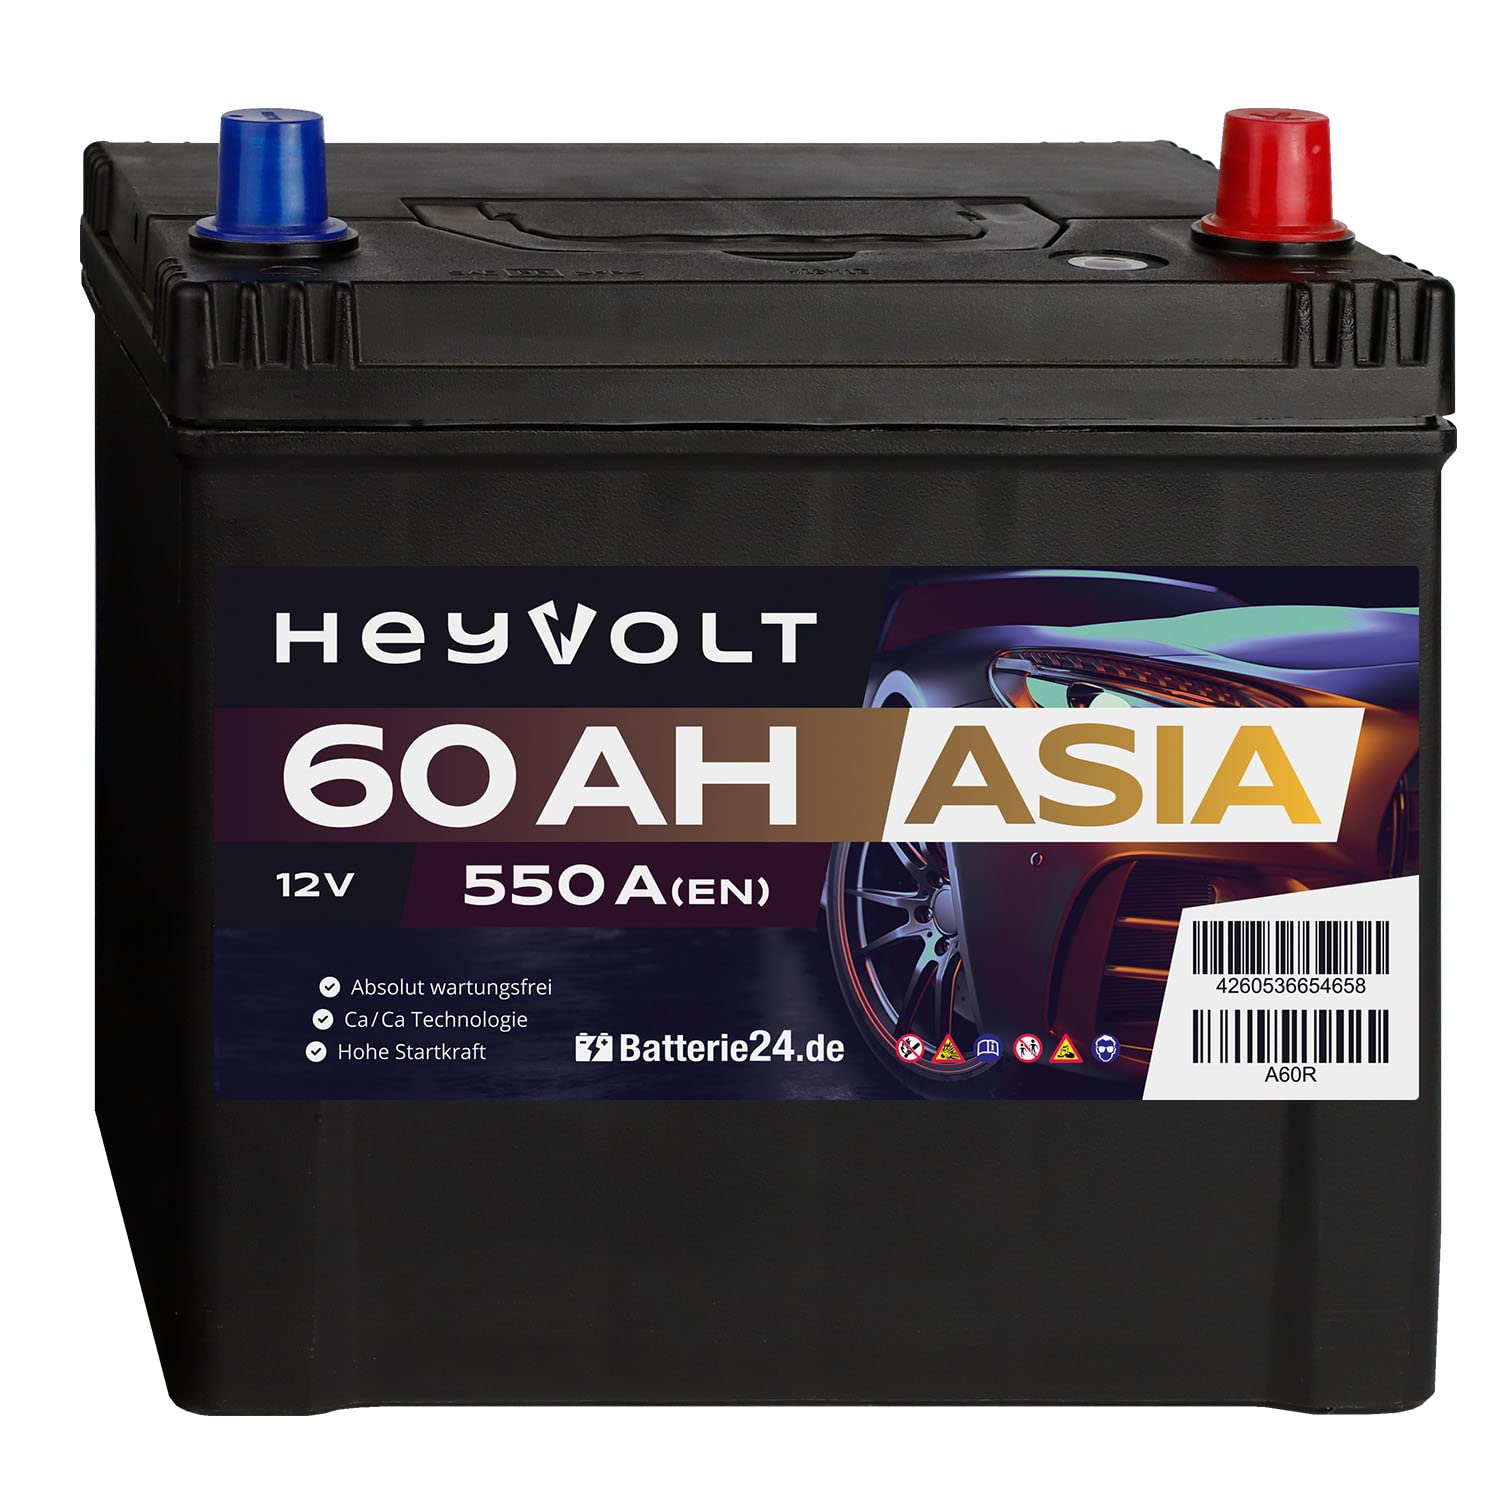 HeyVolt Asia Autobatterie 12V 60Ah 550A/EN Starterbatterie, absolut wartungsfrei, Pluspol Rechts von Batterie24.de